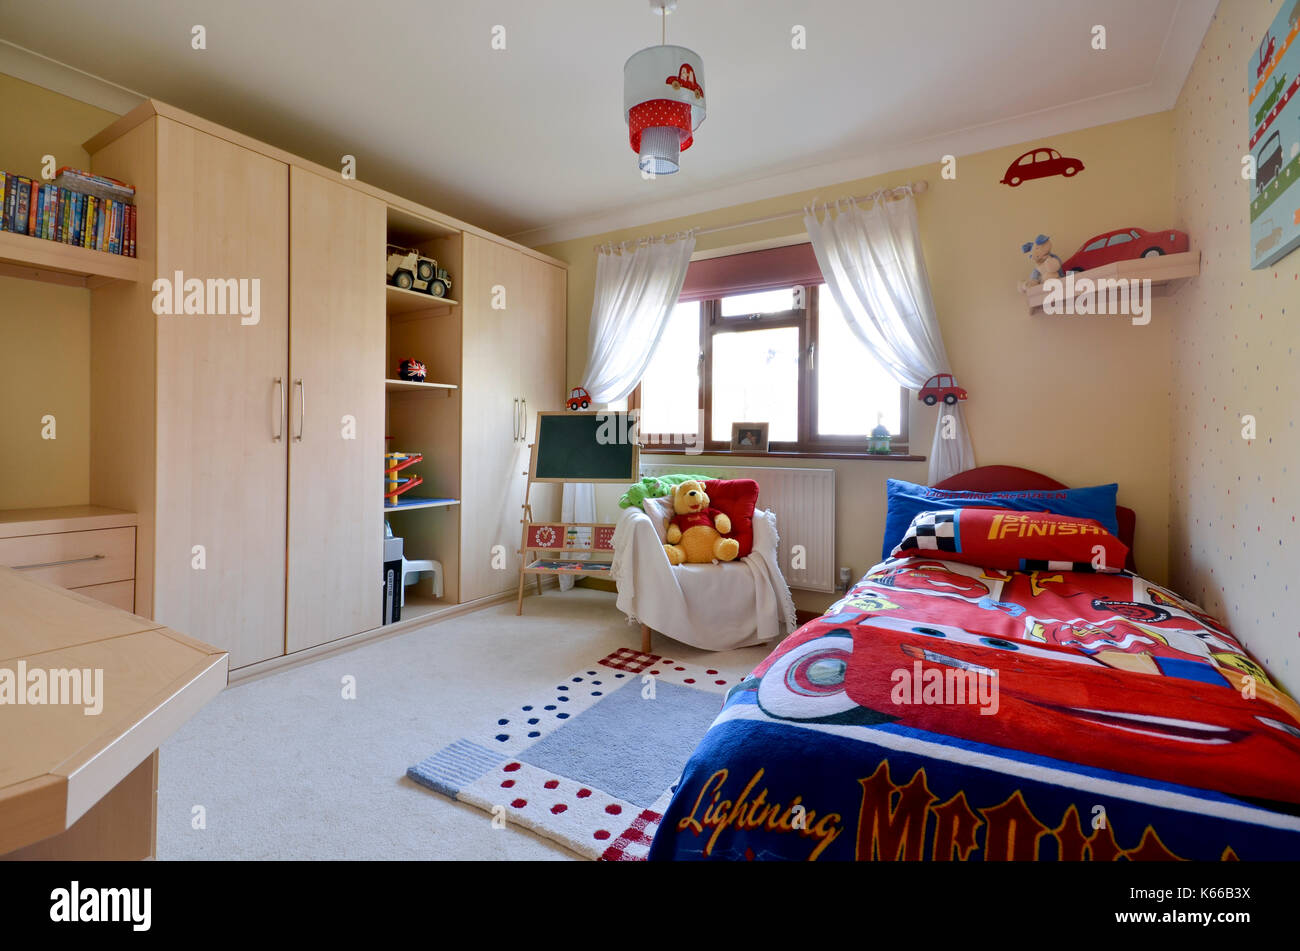 Jungen Jungen Schlafzimmer mit Autos Stockfotografie - Alamy